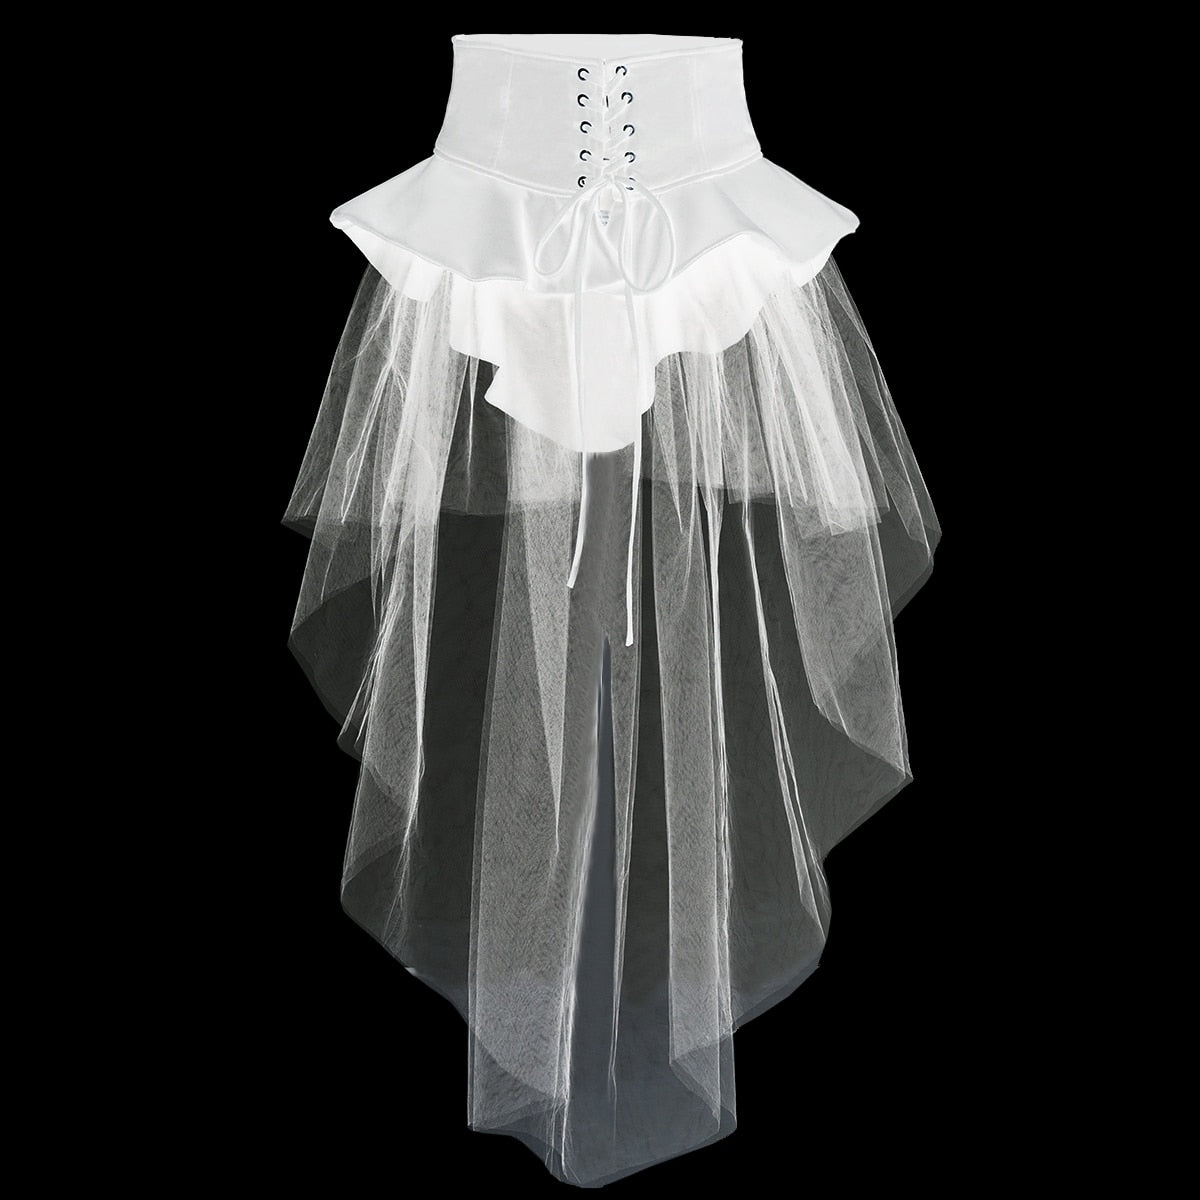 Ceinture corset avec jupe tulle coloris noir ou blanc